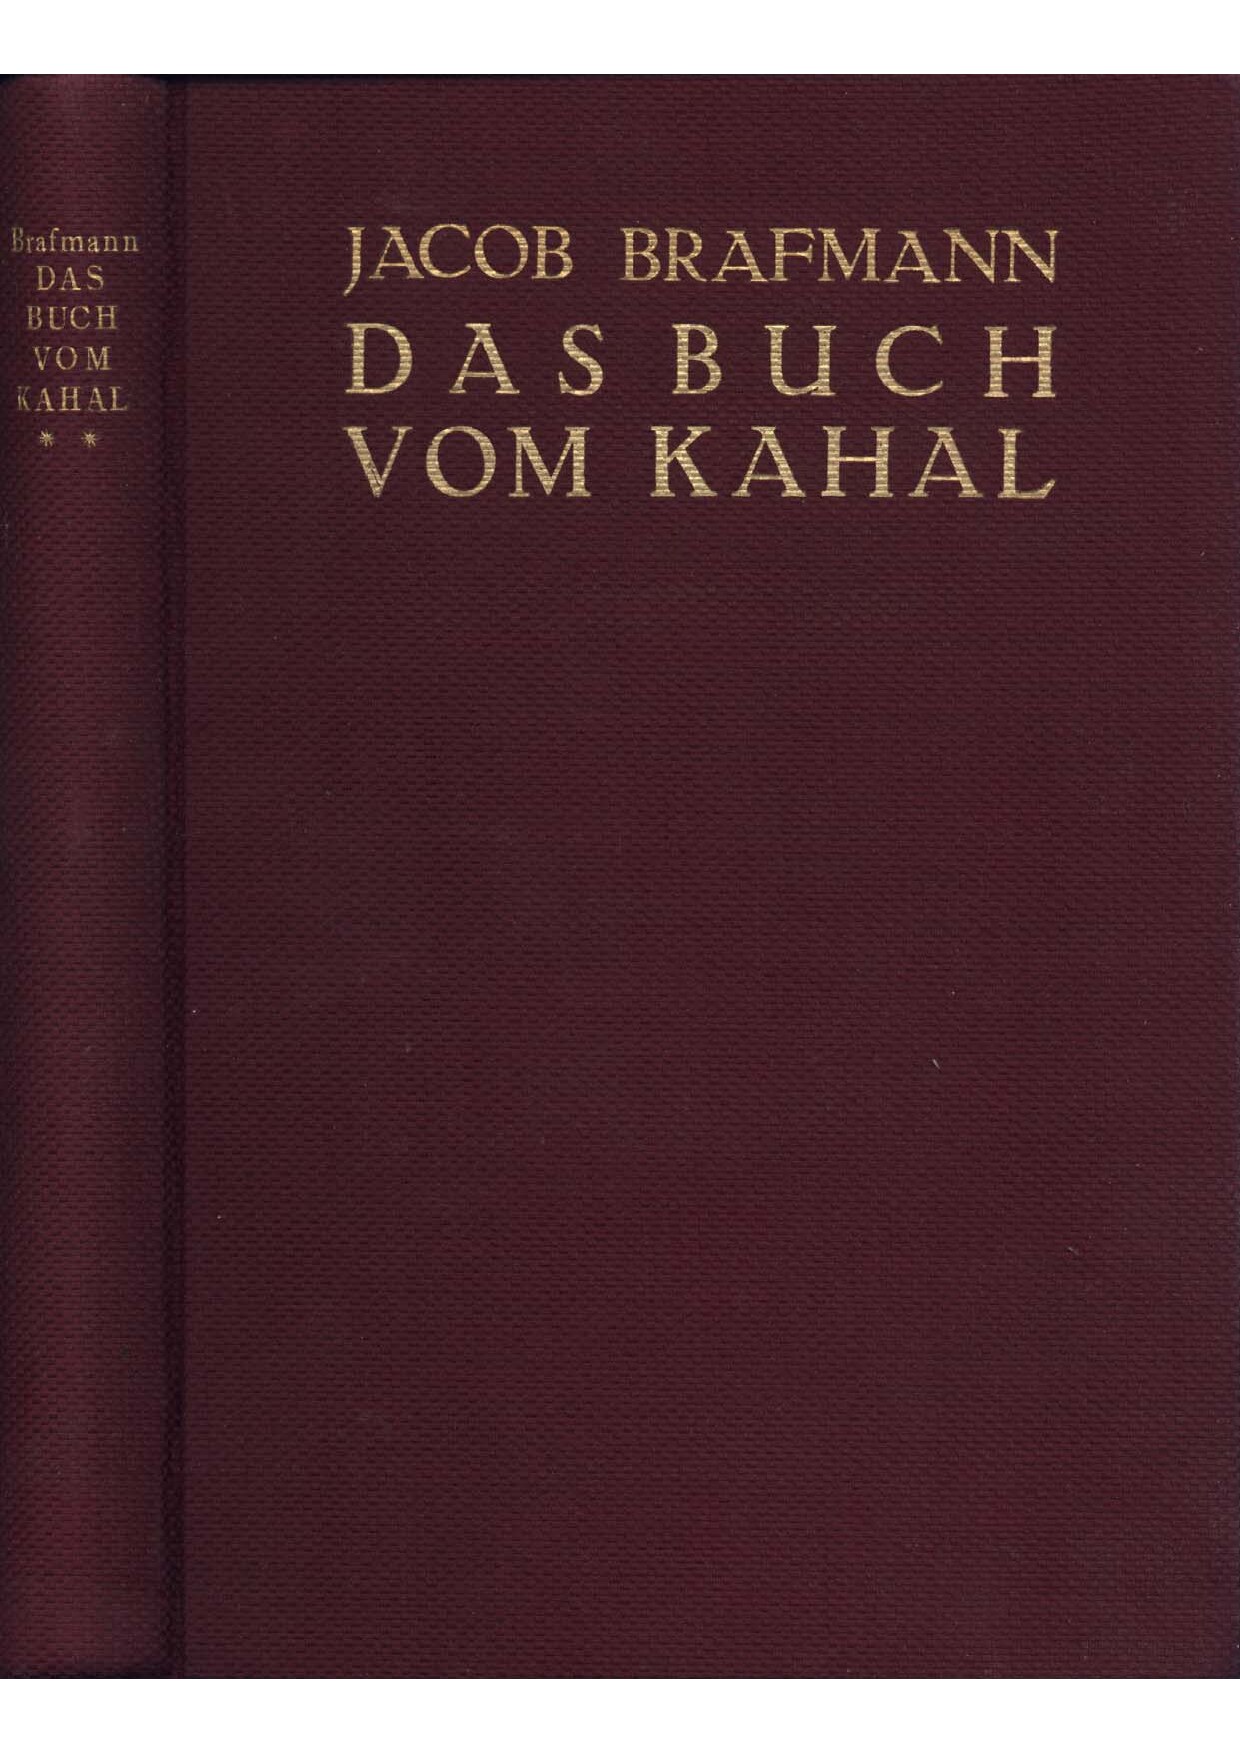 Das Buch vom Kahal - 2. Band (1928, 401 S., Scan, Fraktur)